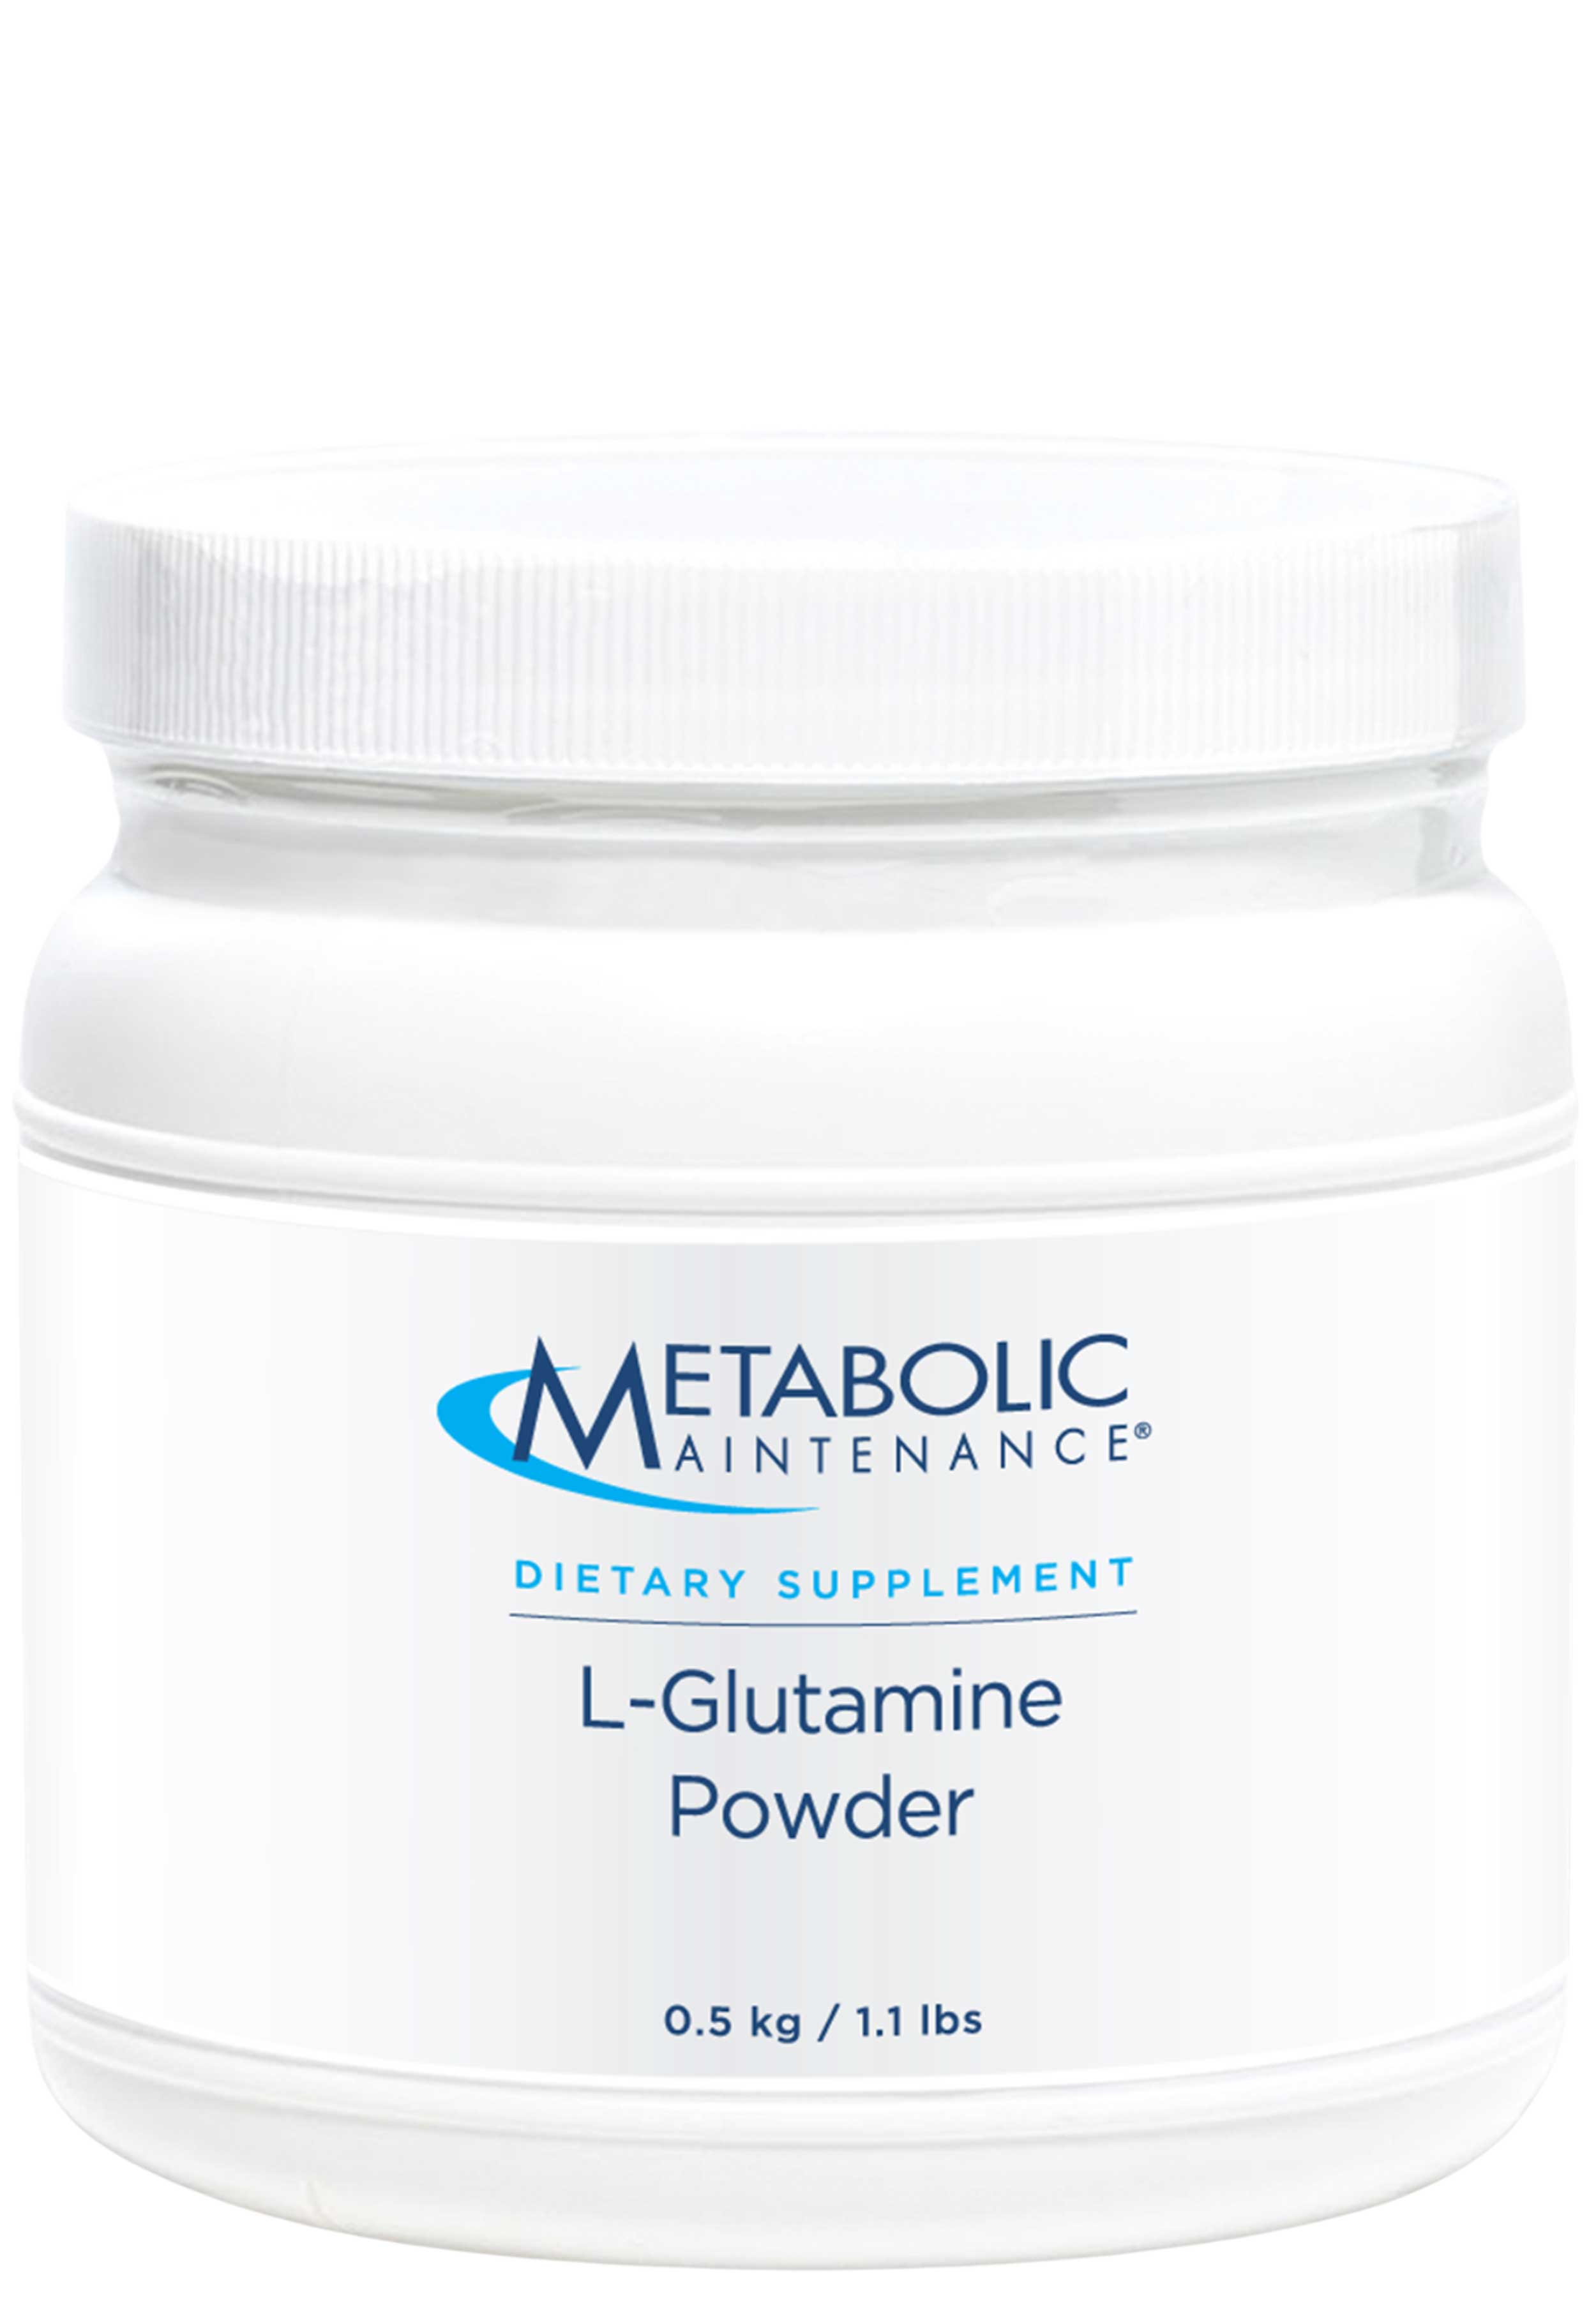 Metabolic Maintenance L-Glutamine Powder